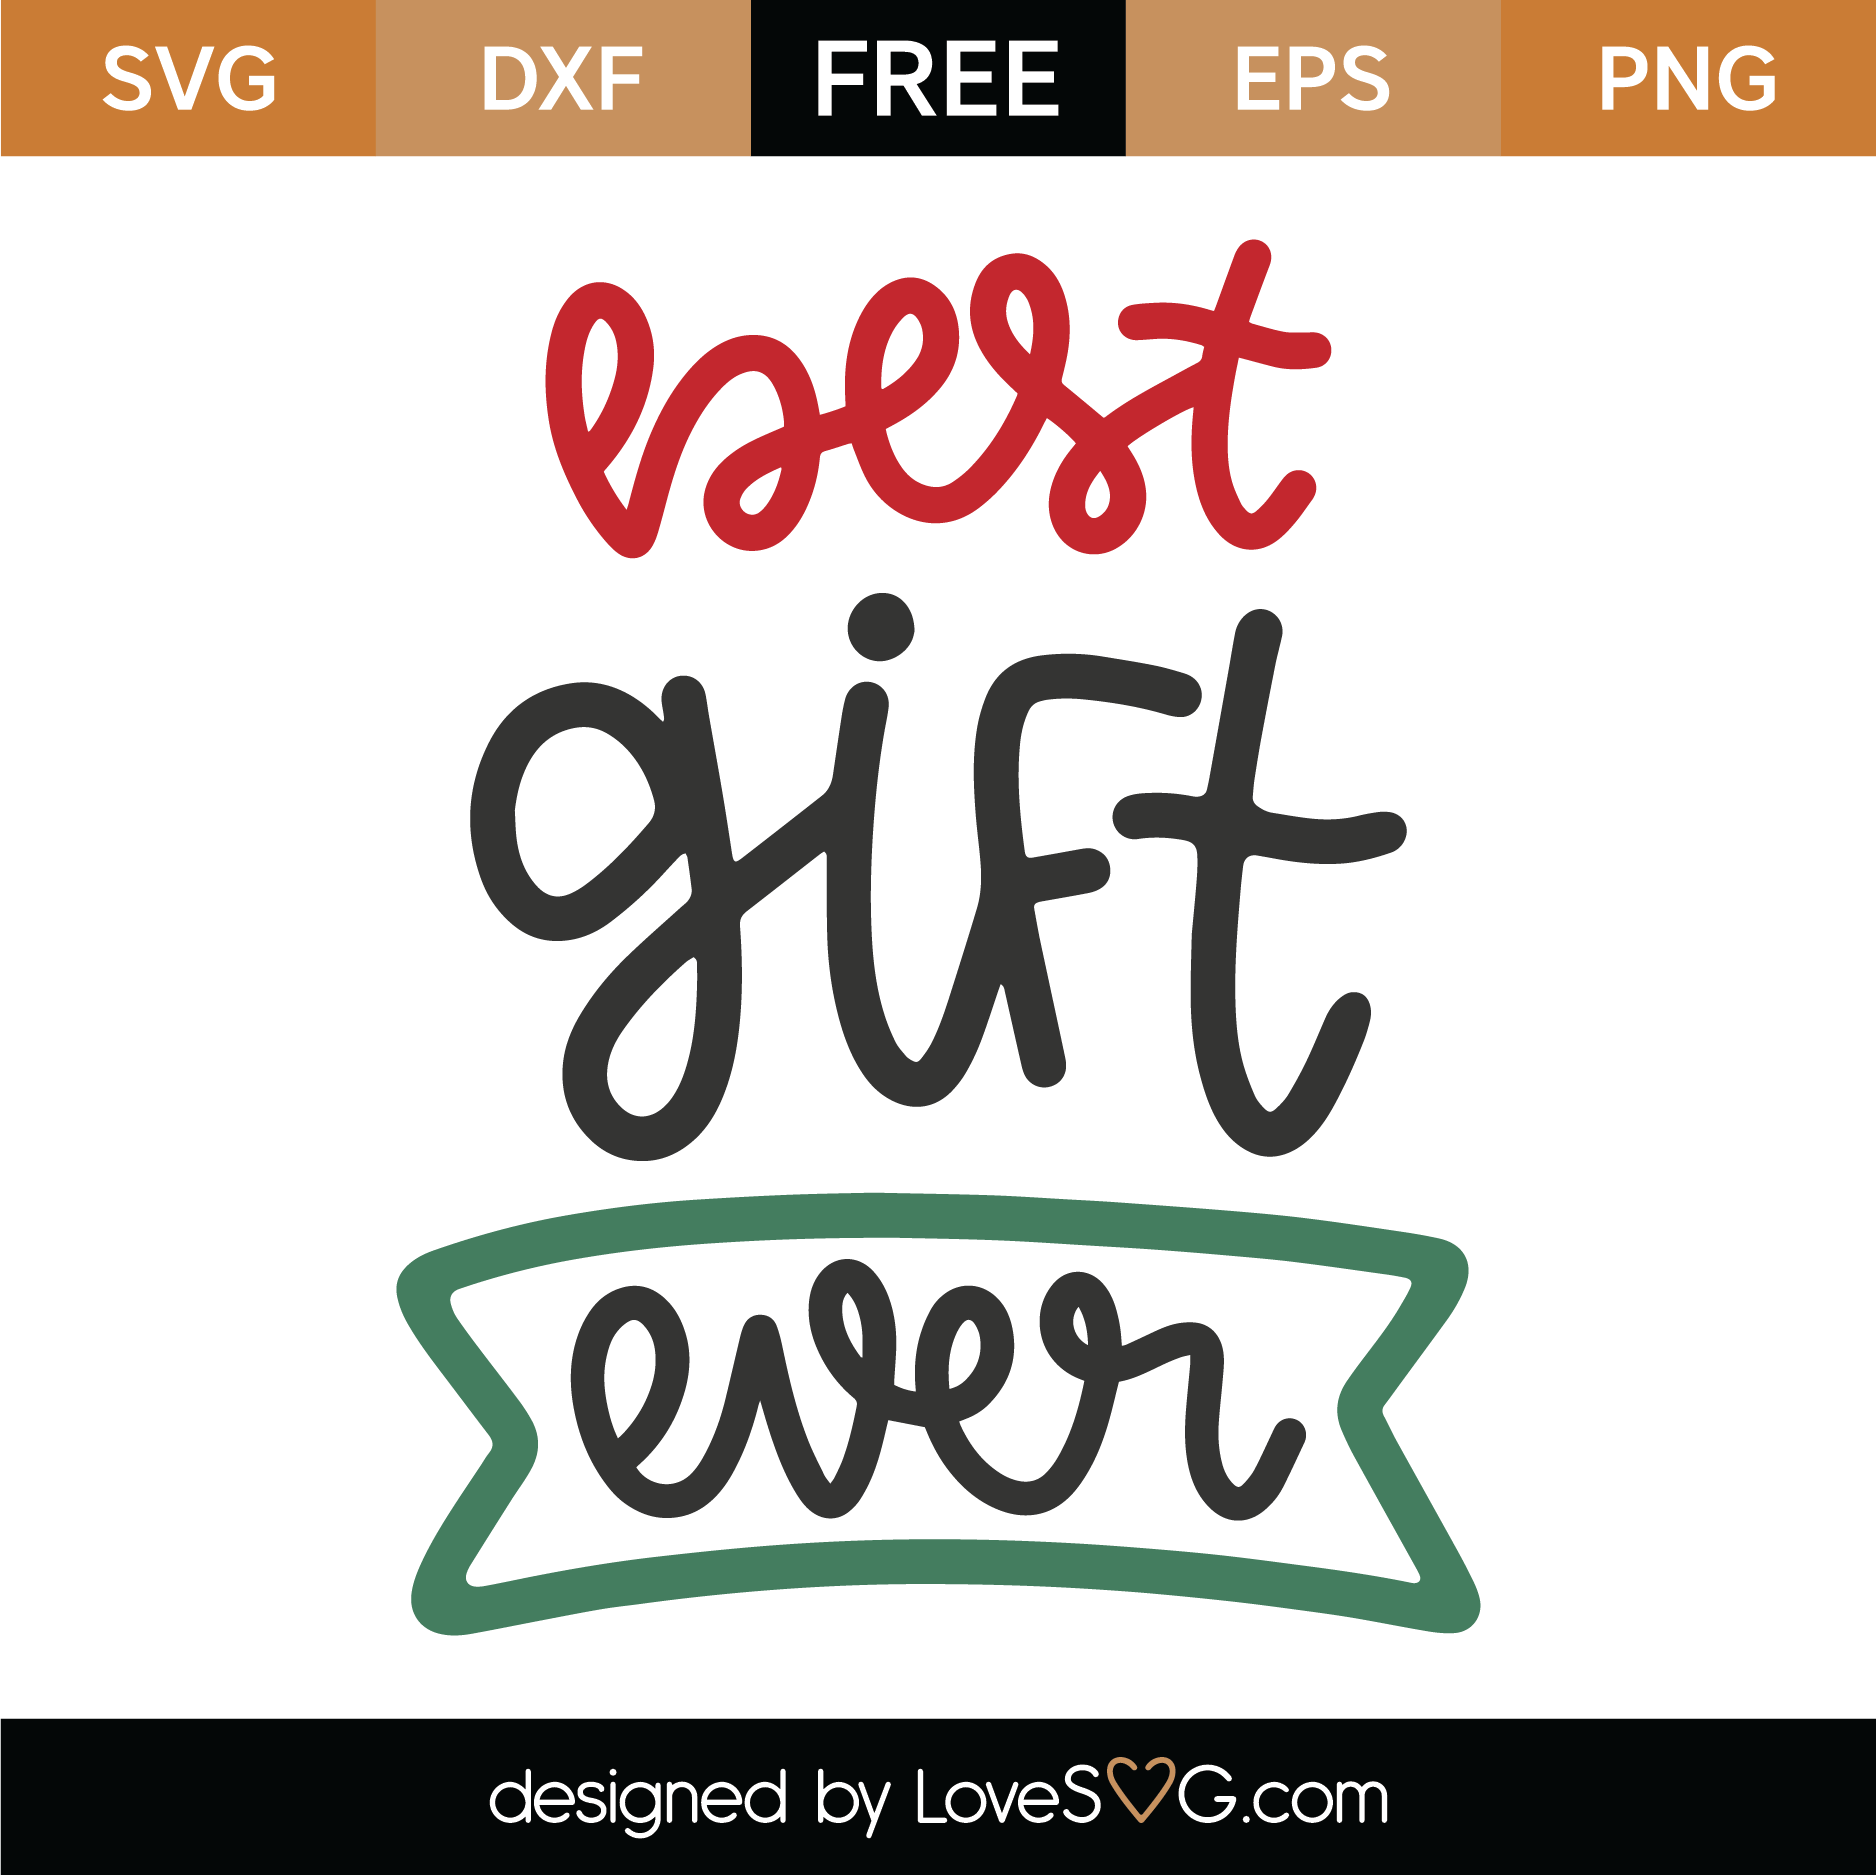 Download Free Best Gift Ever SVG Cut File | Lovesvg.com